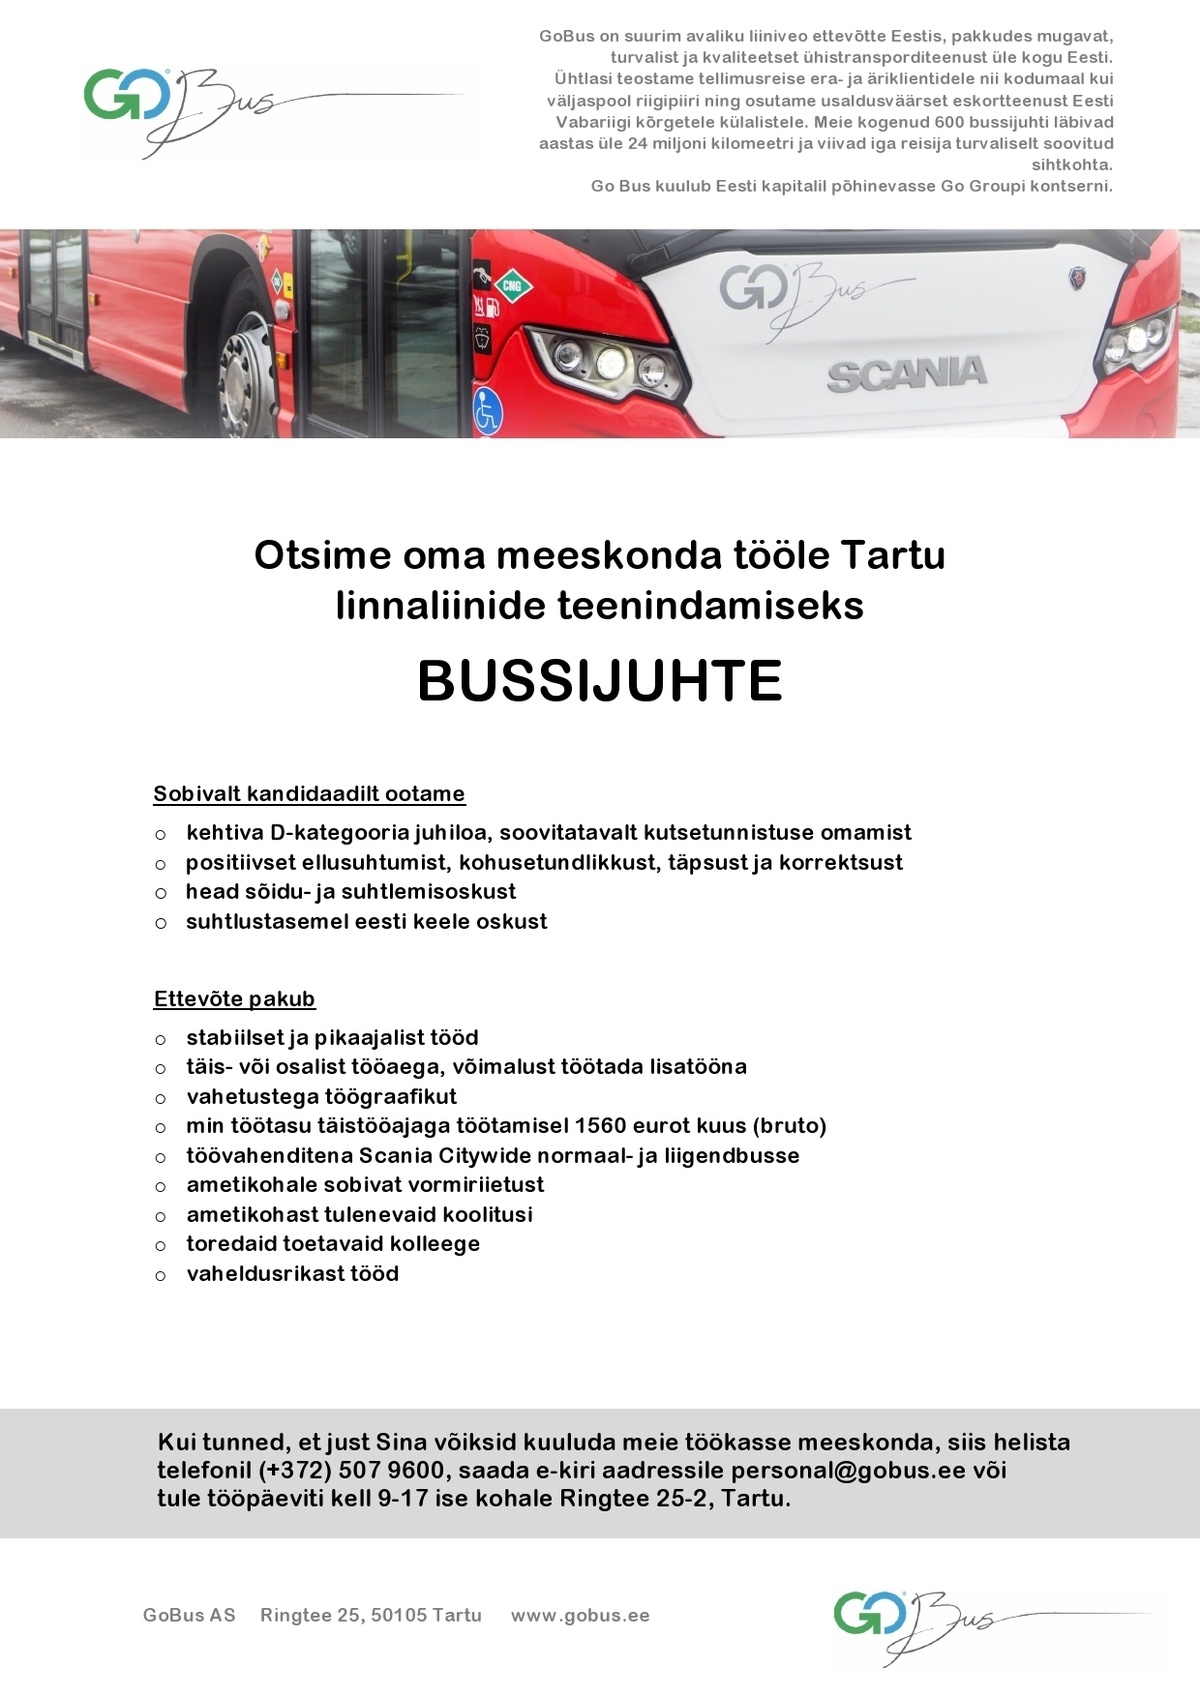 GoBus AS Tartu linnaliinide bussijuht